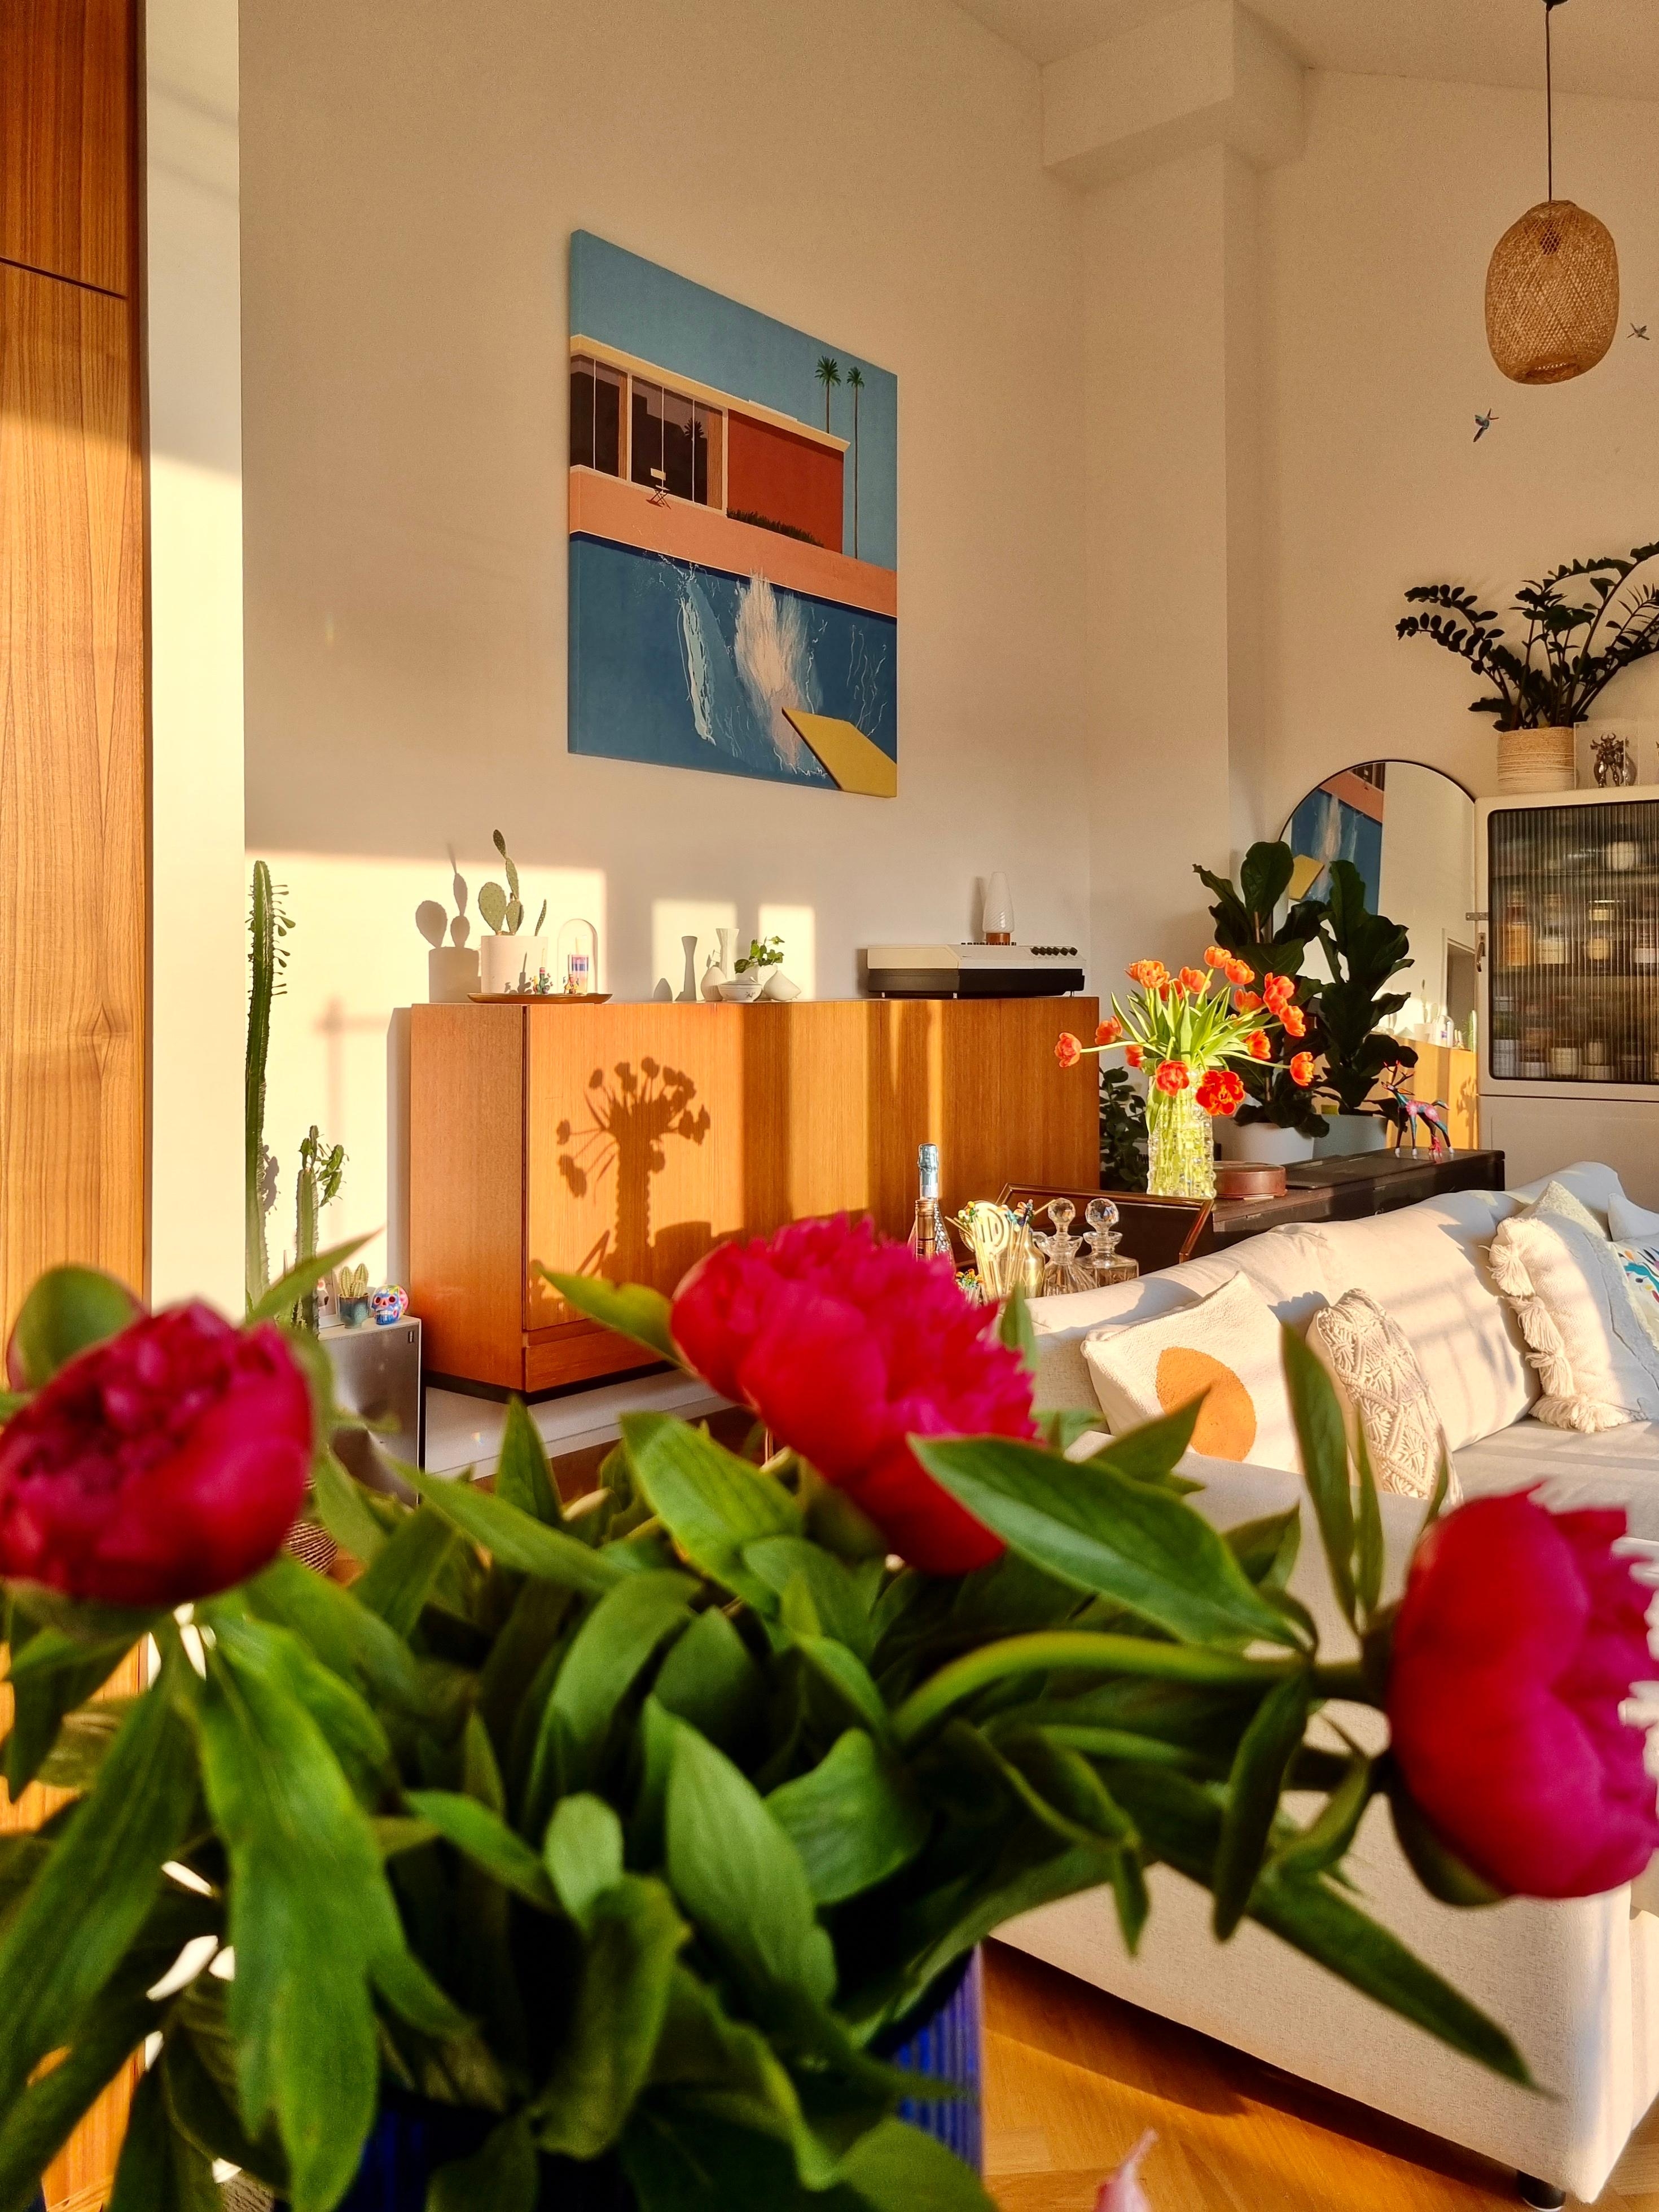 Wenn die Gäste #Blumen mitbringen, hat man doppelte Freude 🥹 💐 #wohnzimmer #sideboard #blumendeko